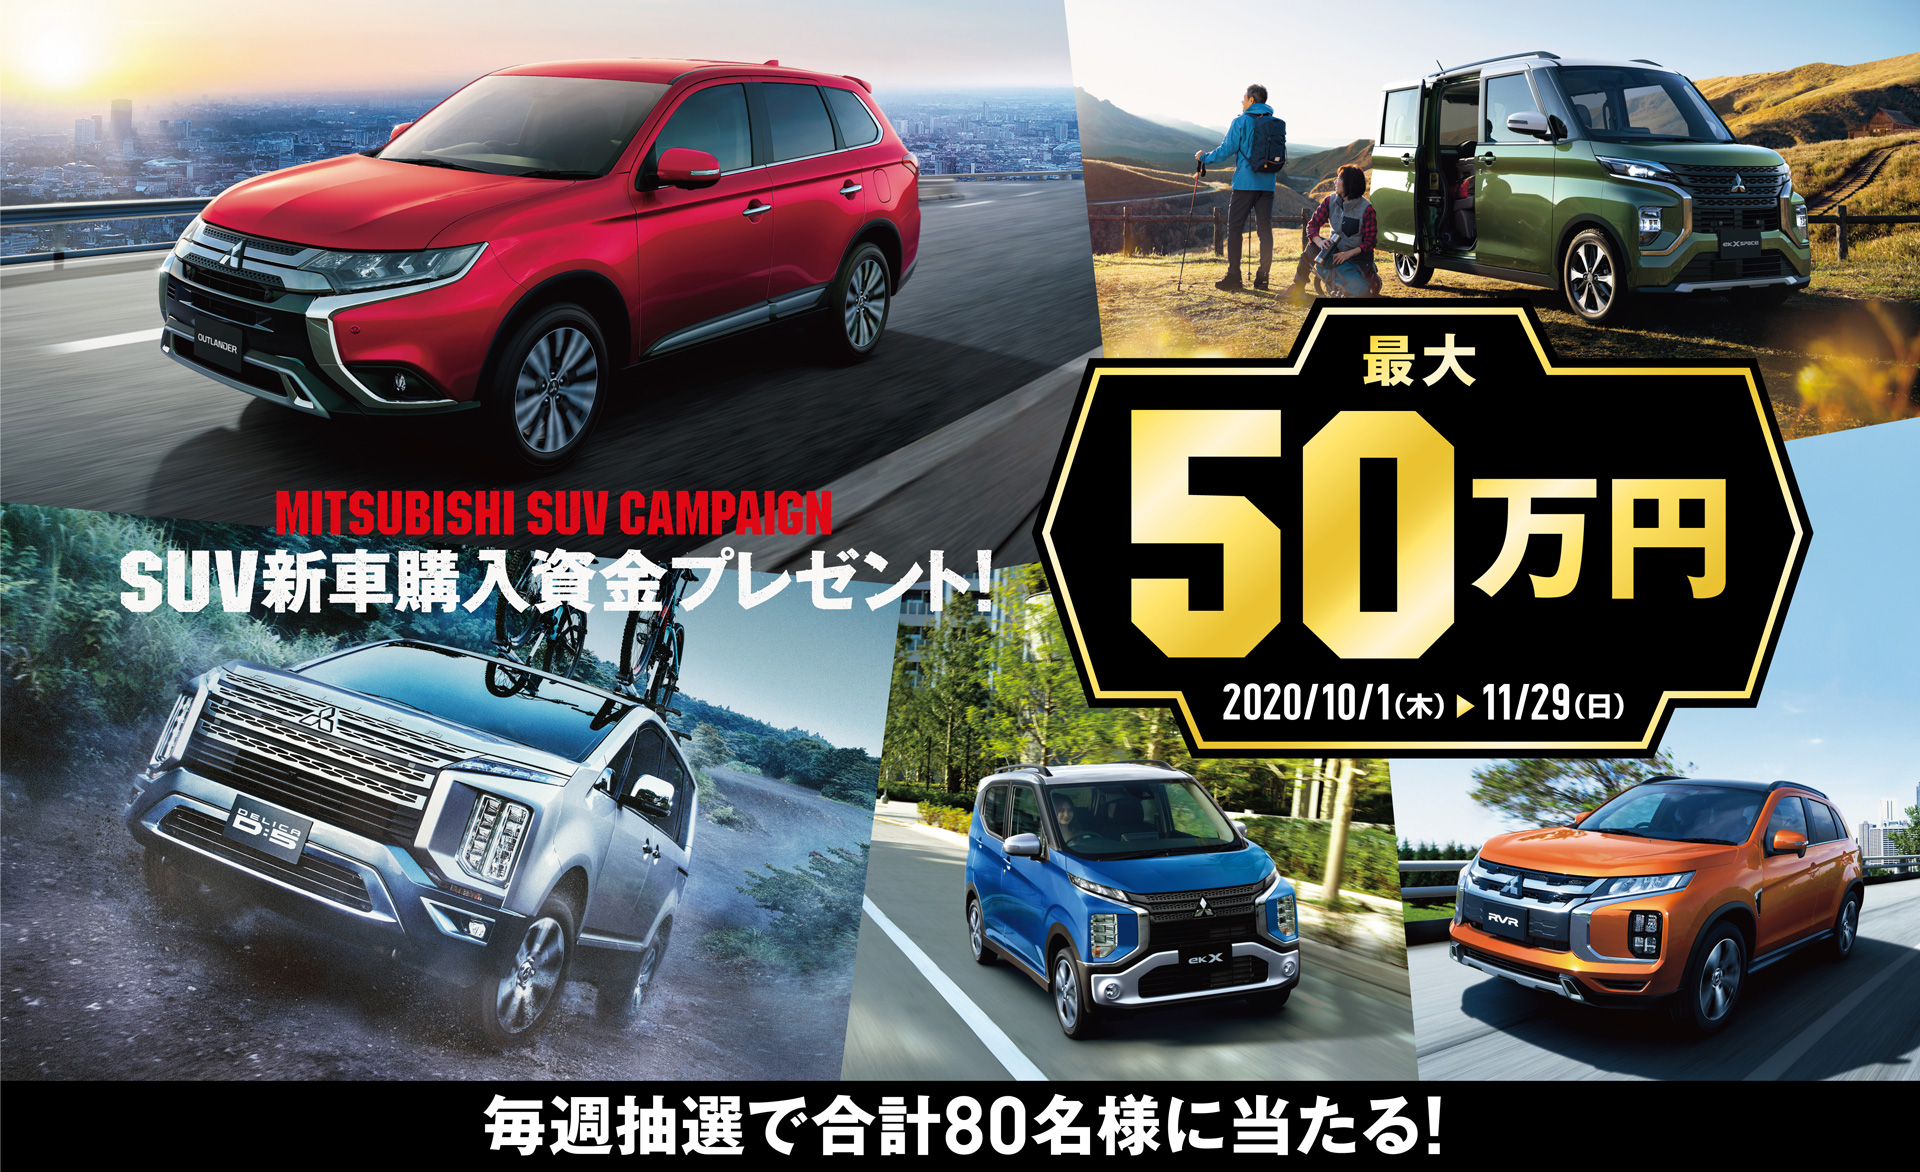 三菱自動車 Suv新車購入資金最大50万円が抽選で計80名に当たるキャンペーン Car Watch